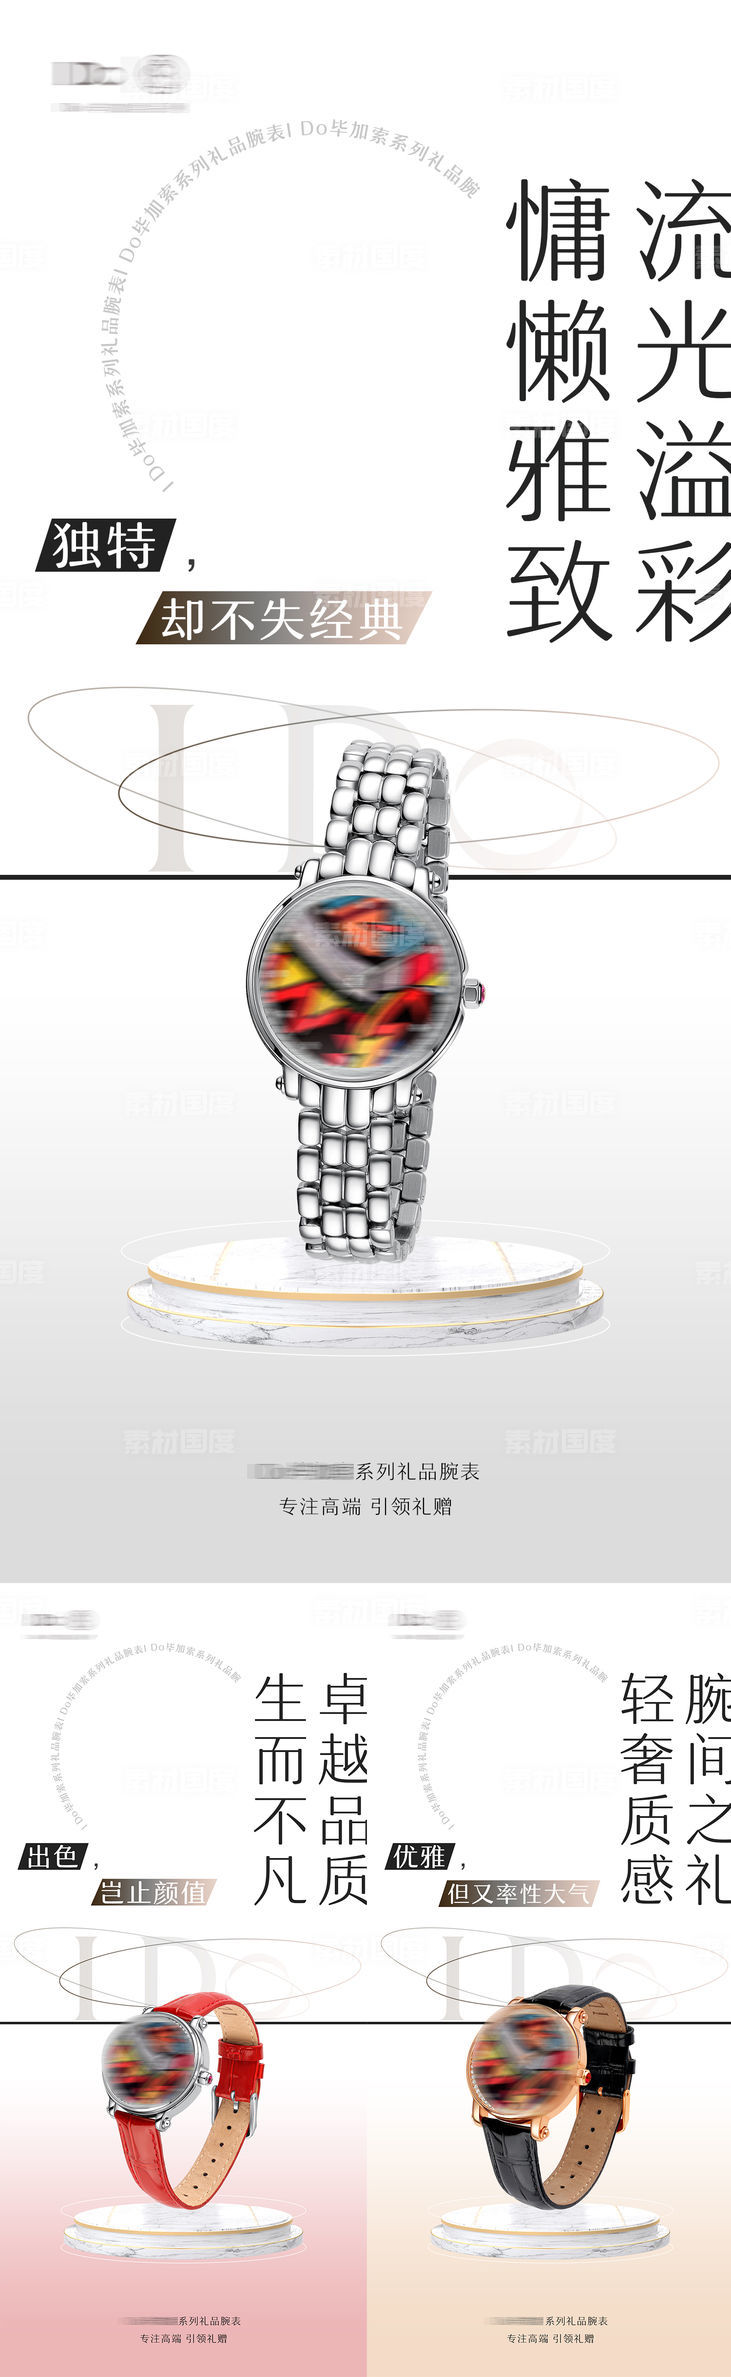 高档品牌腕表手表宣传海报